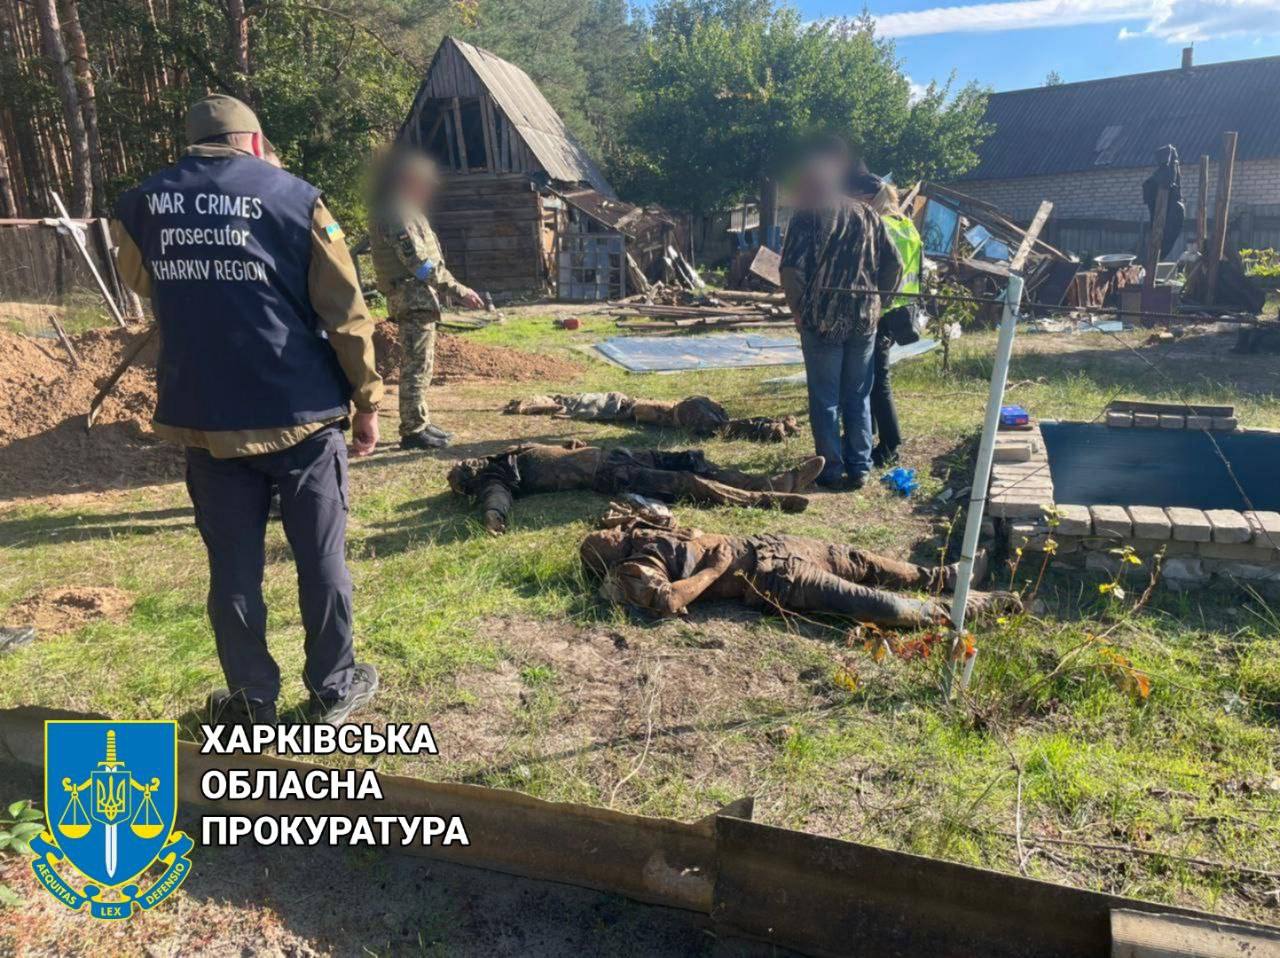 Новини Харькова: Окупанти розстріляли чотирьох мирних мешканців у погребі